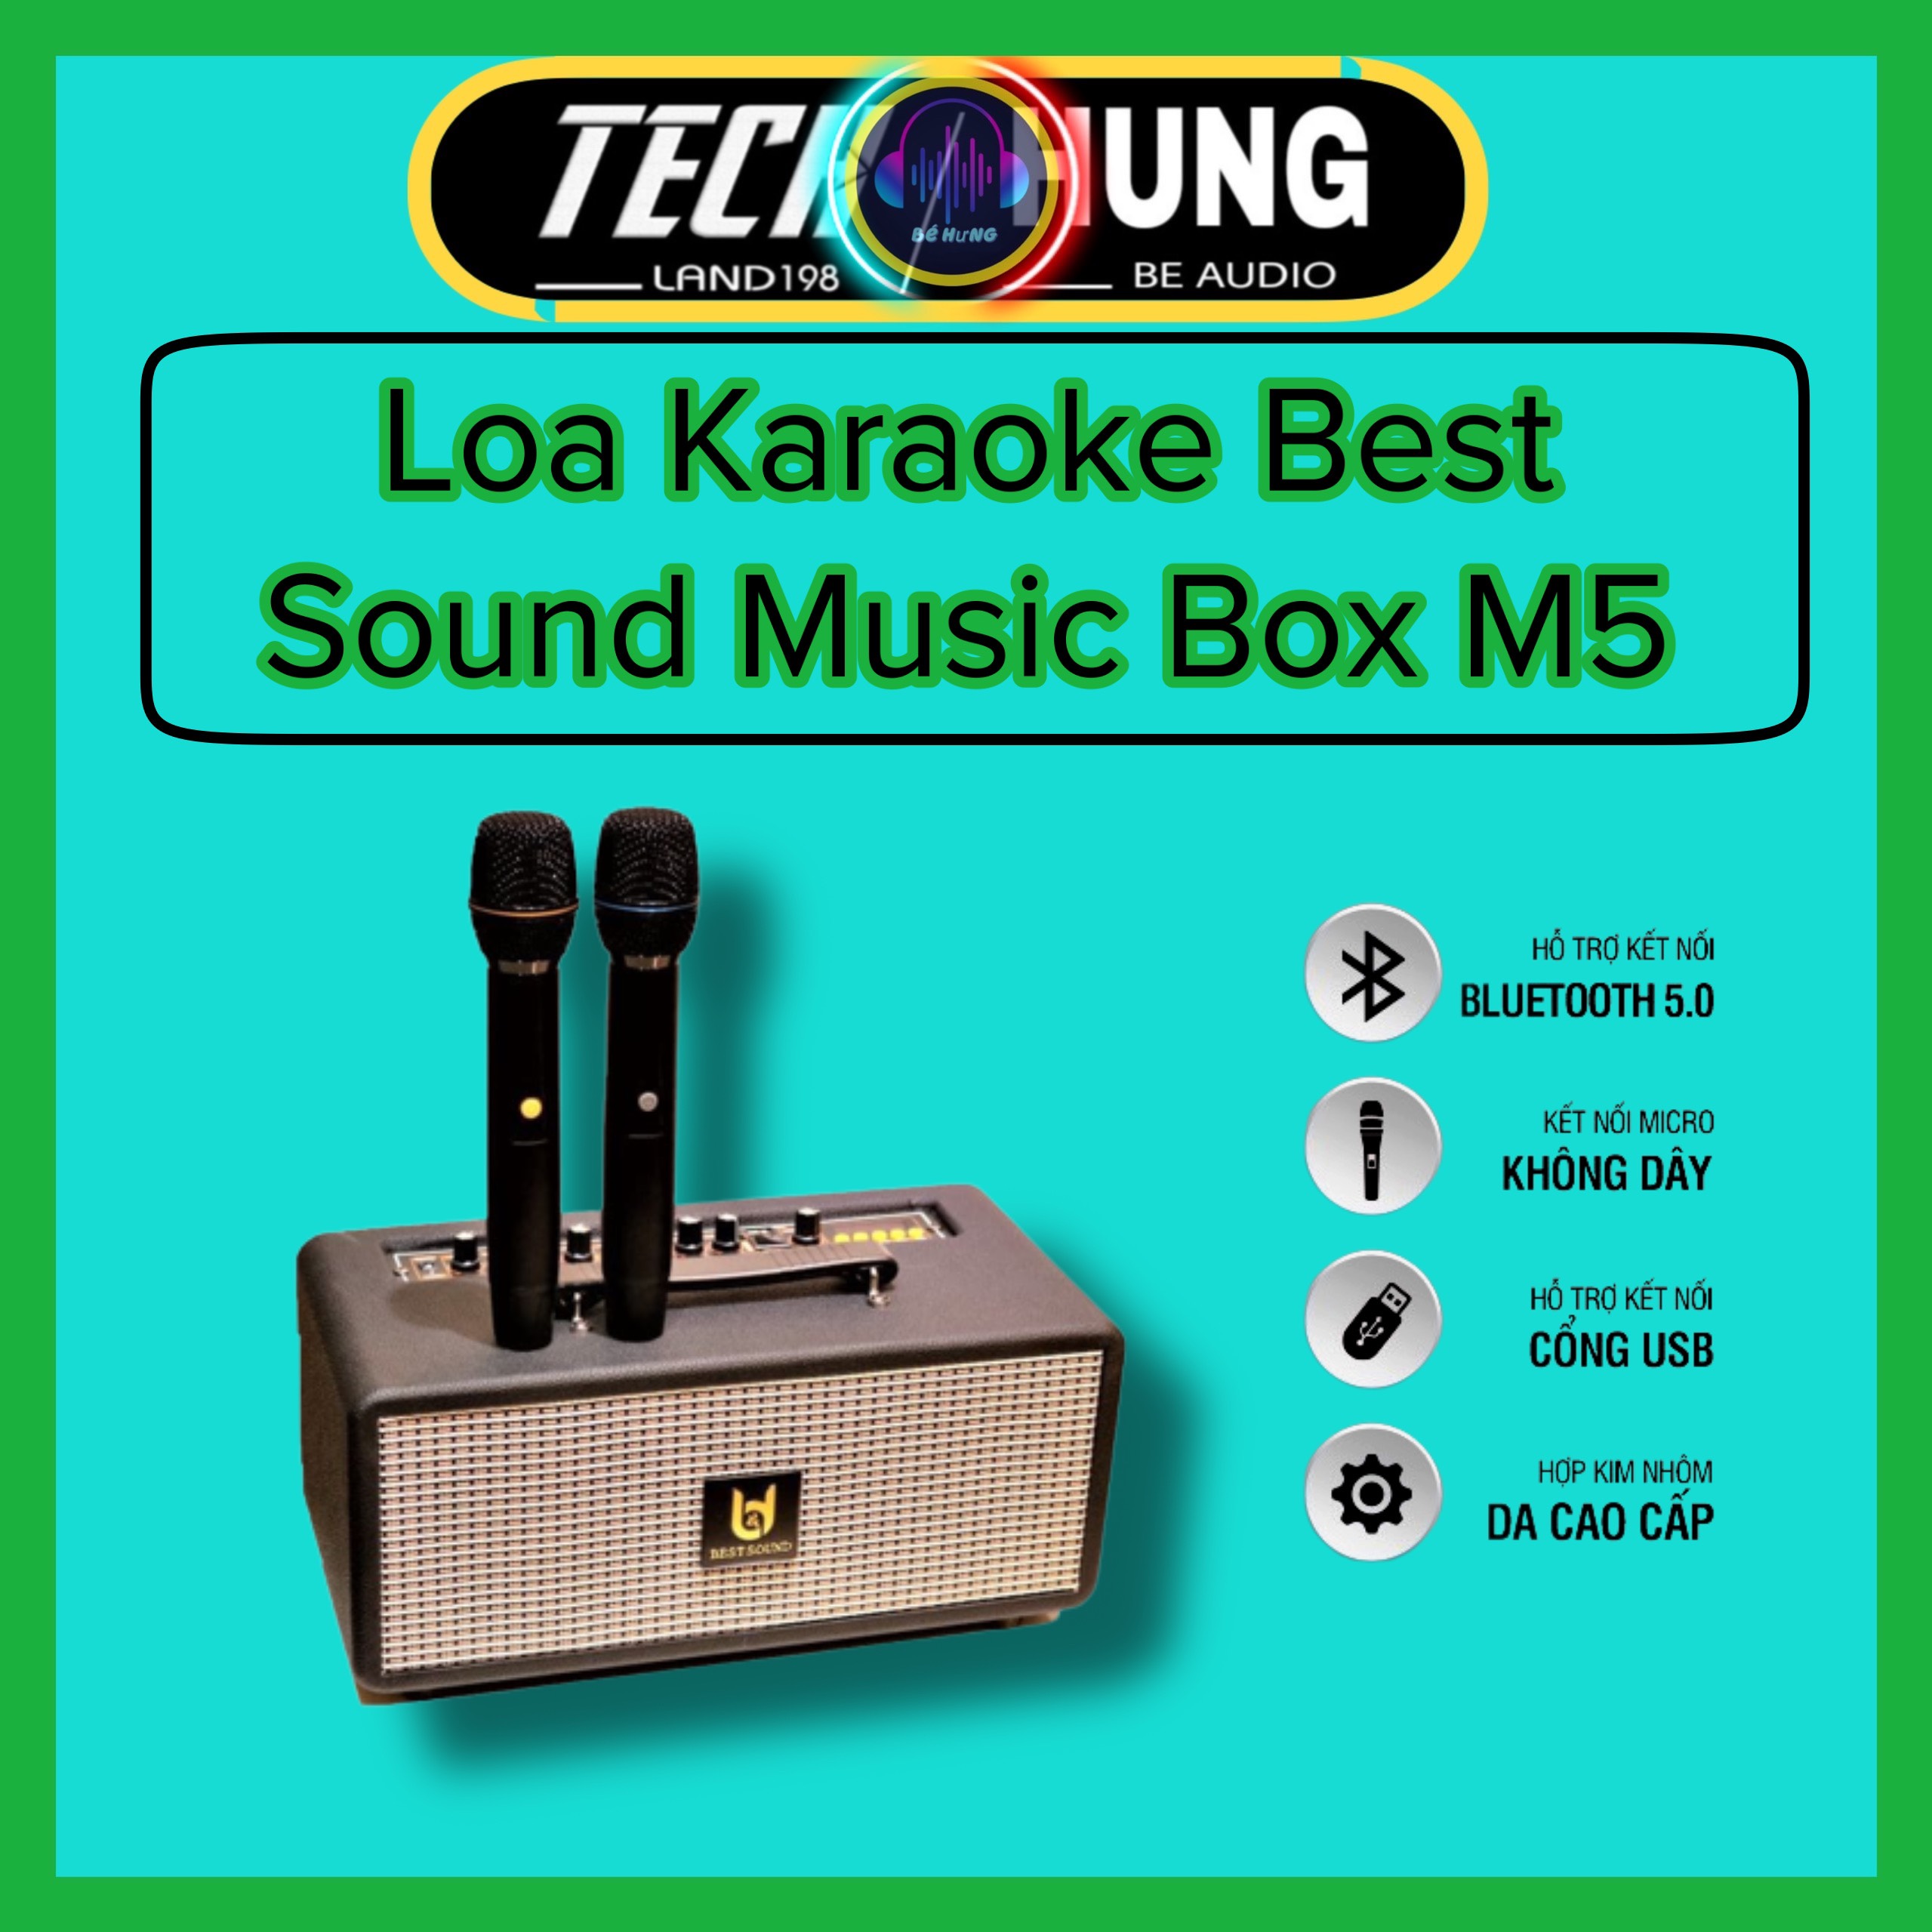 Loa Karaoke Xách Tay di động cao cấp chính hãng Best Sound M5 Musicbox